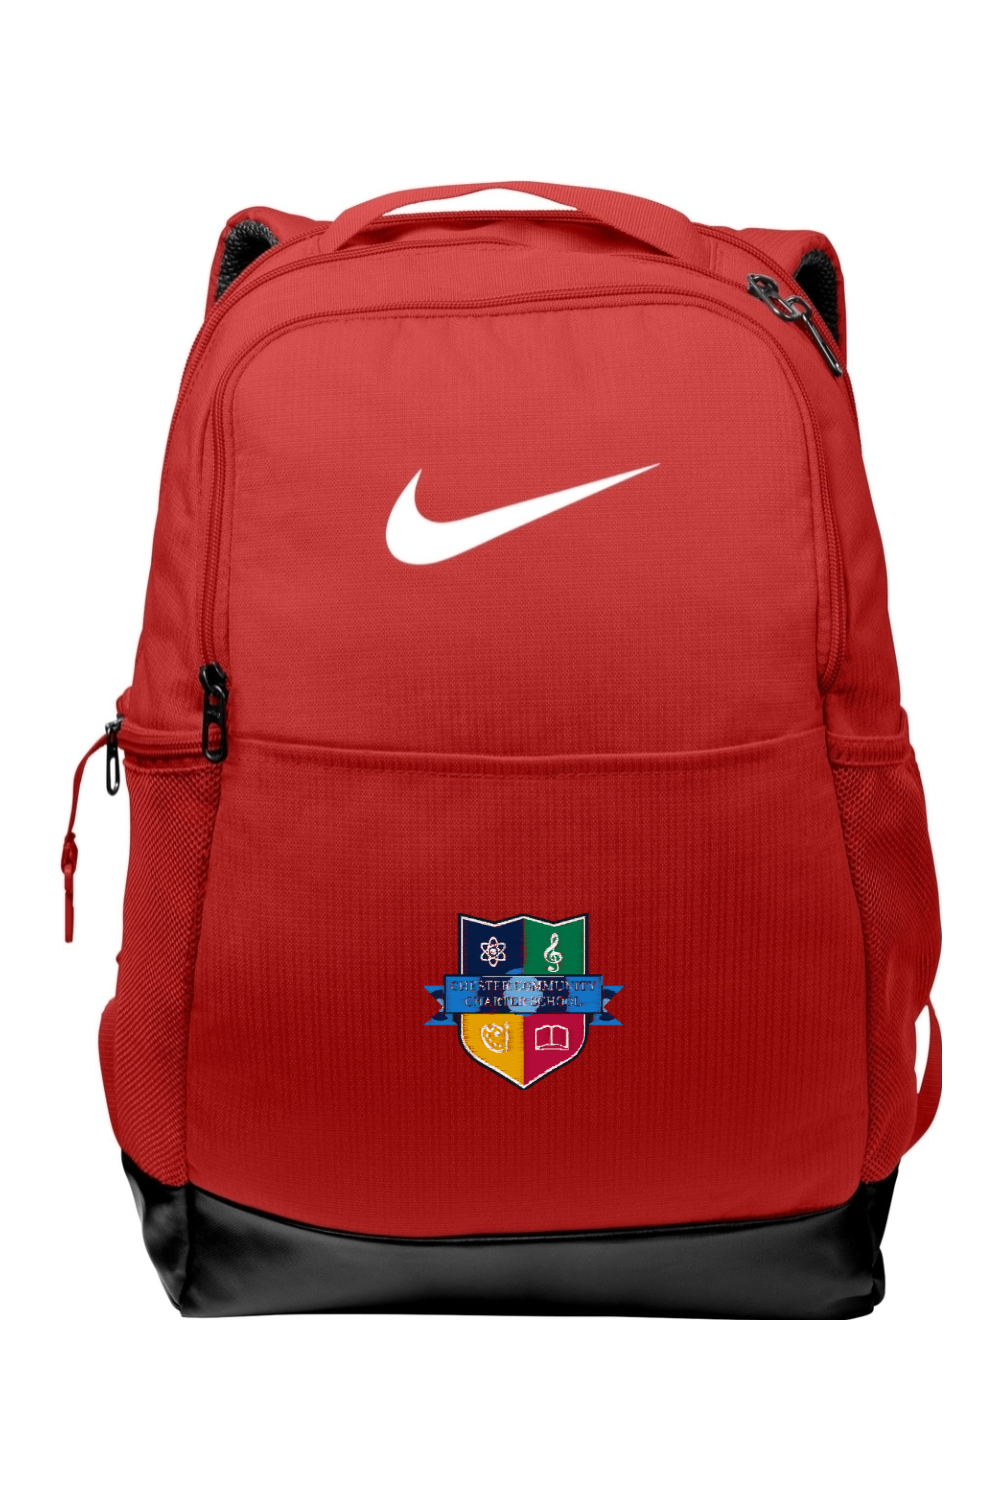 CCCS Logo Nike Brasilia Medium Backpack